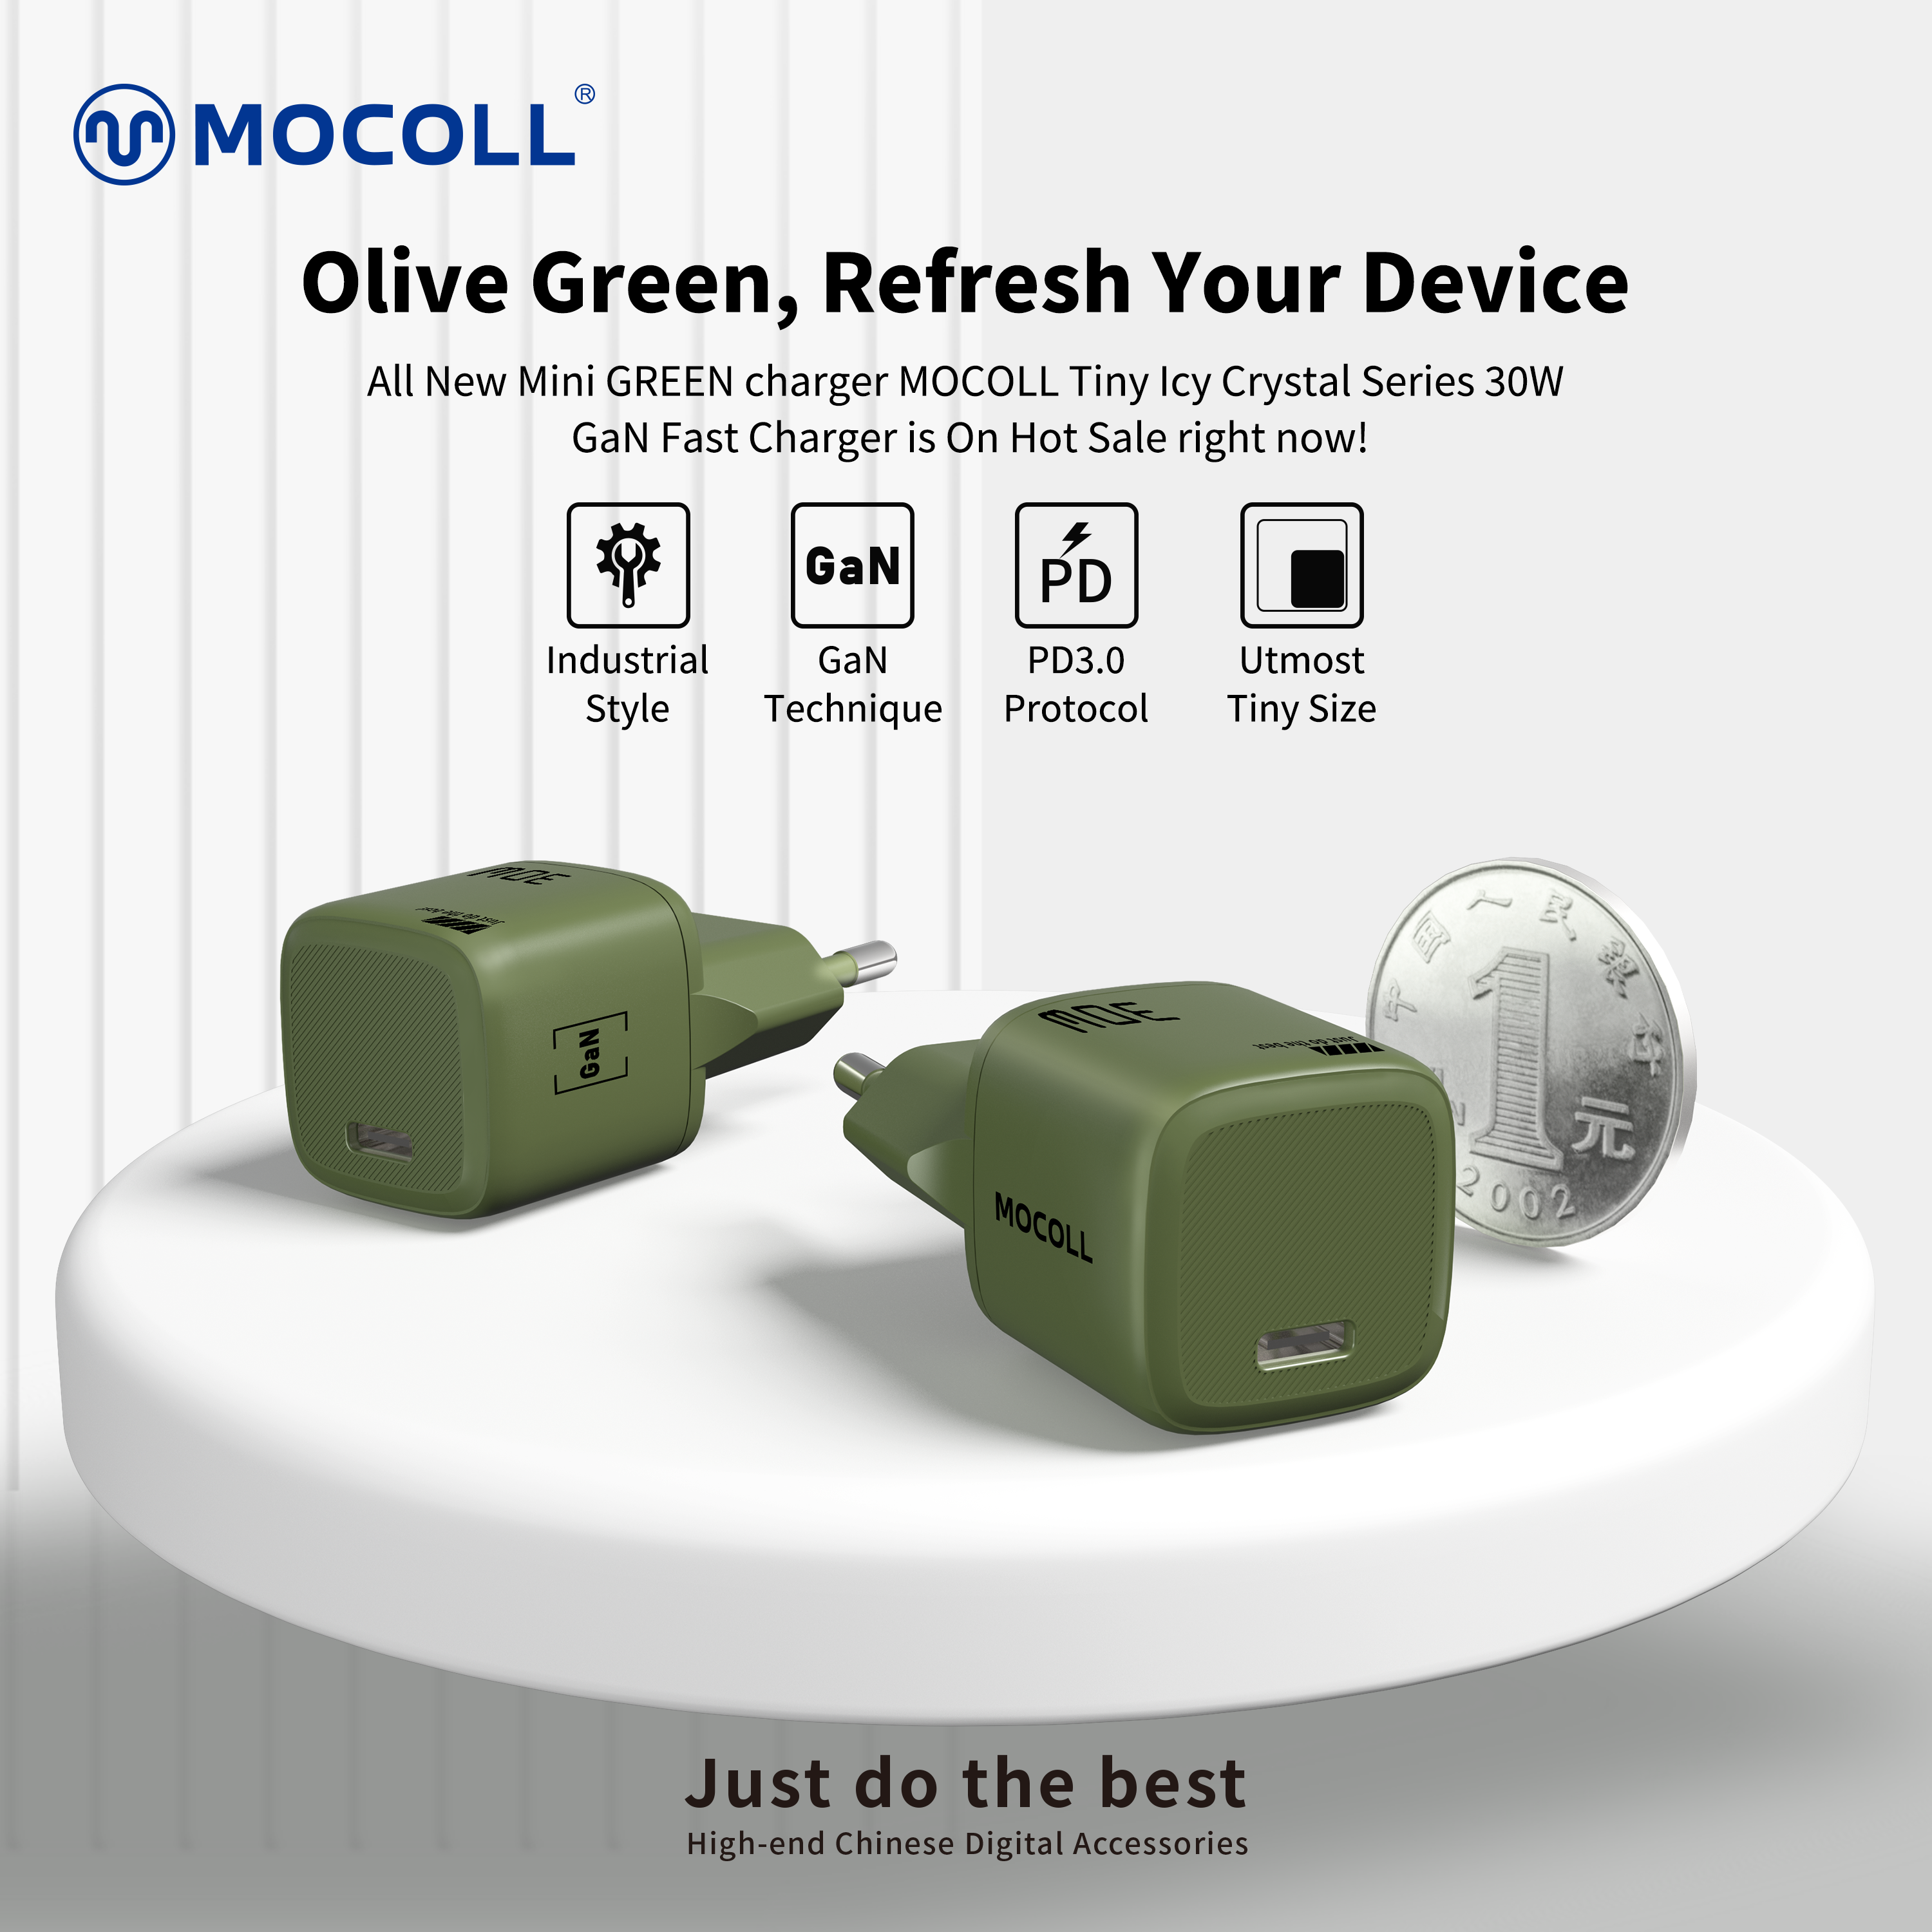 Para Verde | Estilo industrial, carregador rápido MOCOLL novo verde oliva GaN 30W